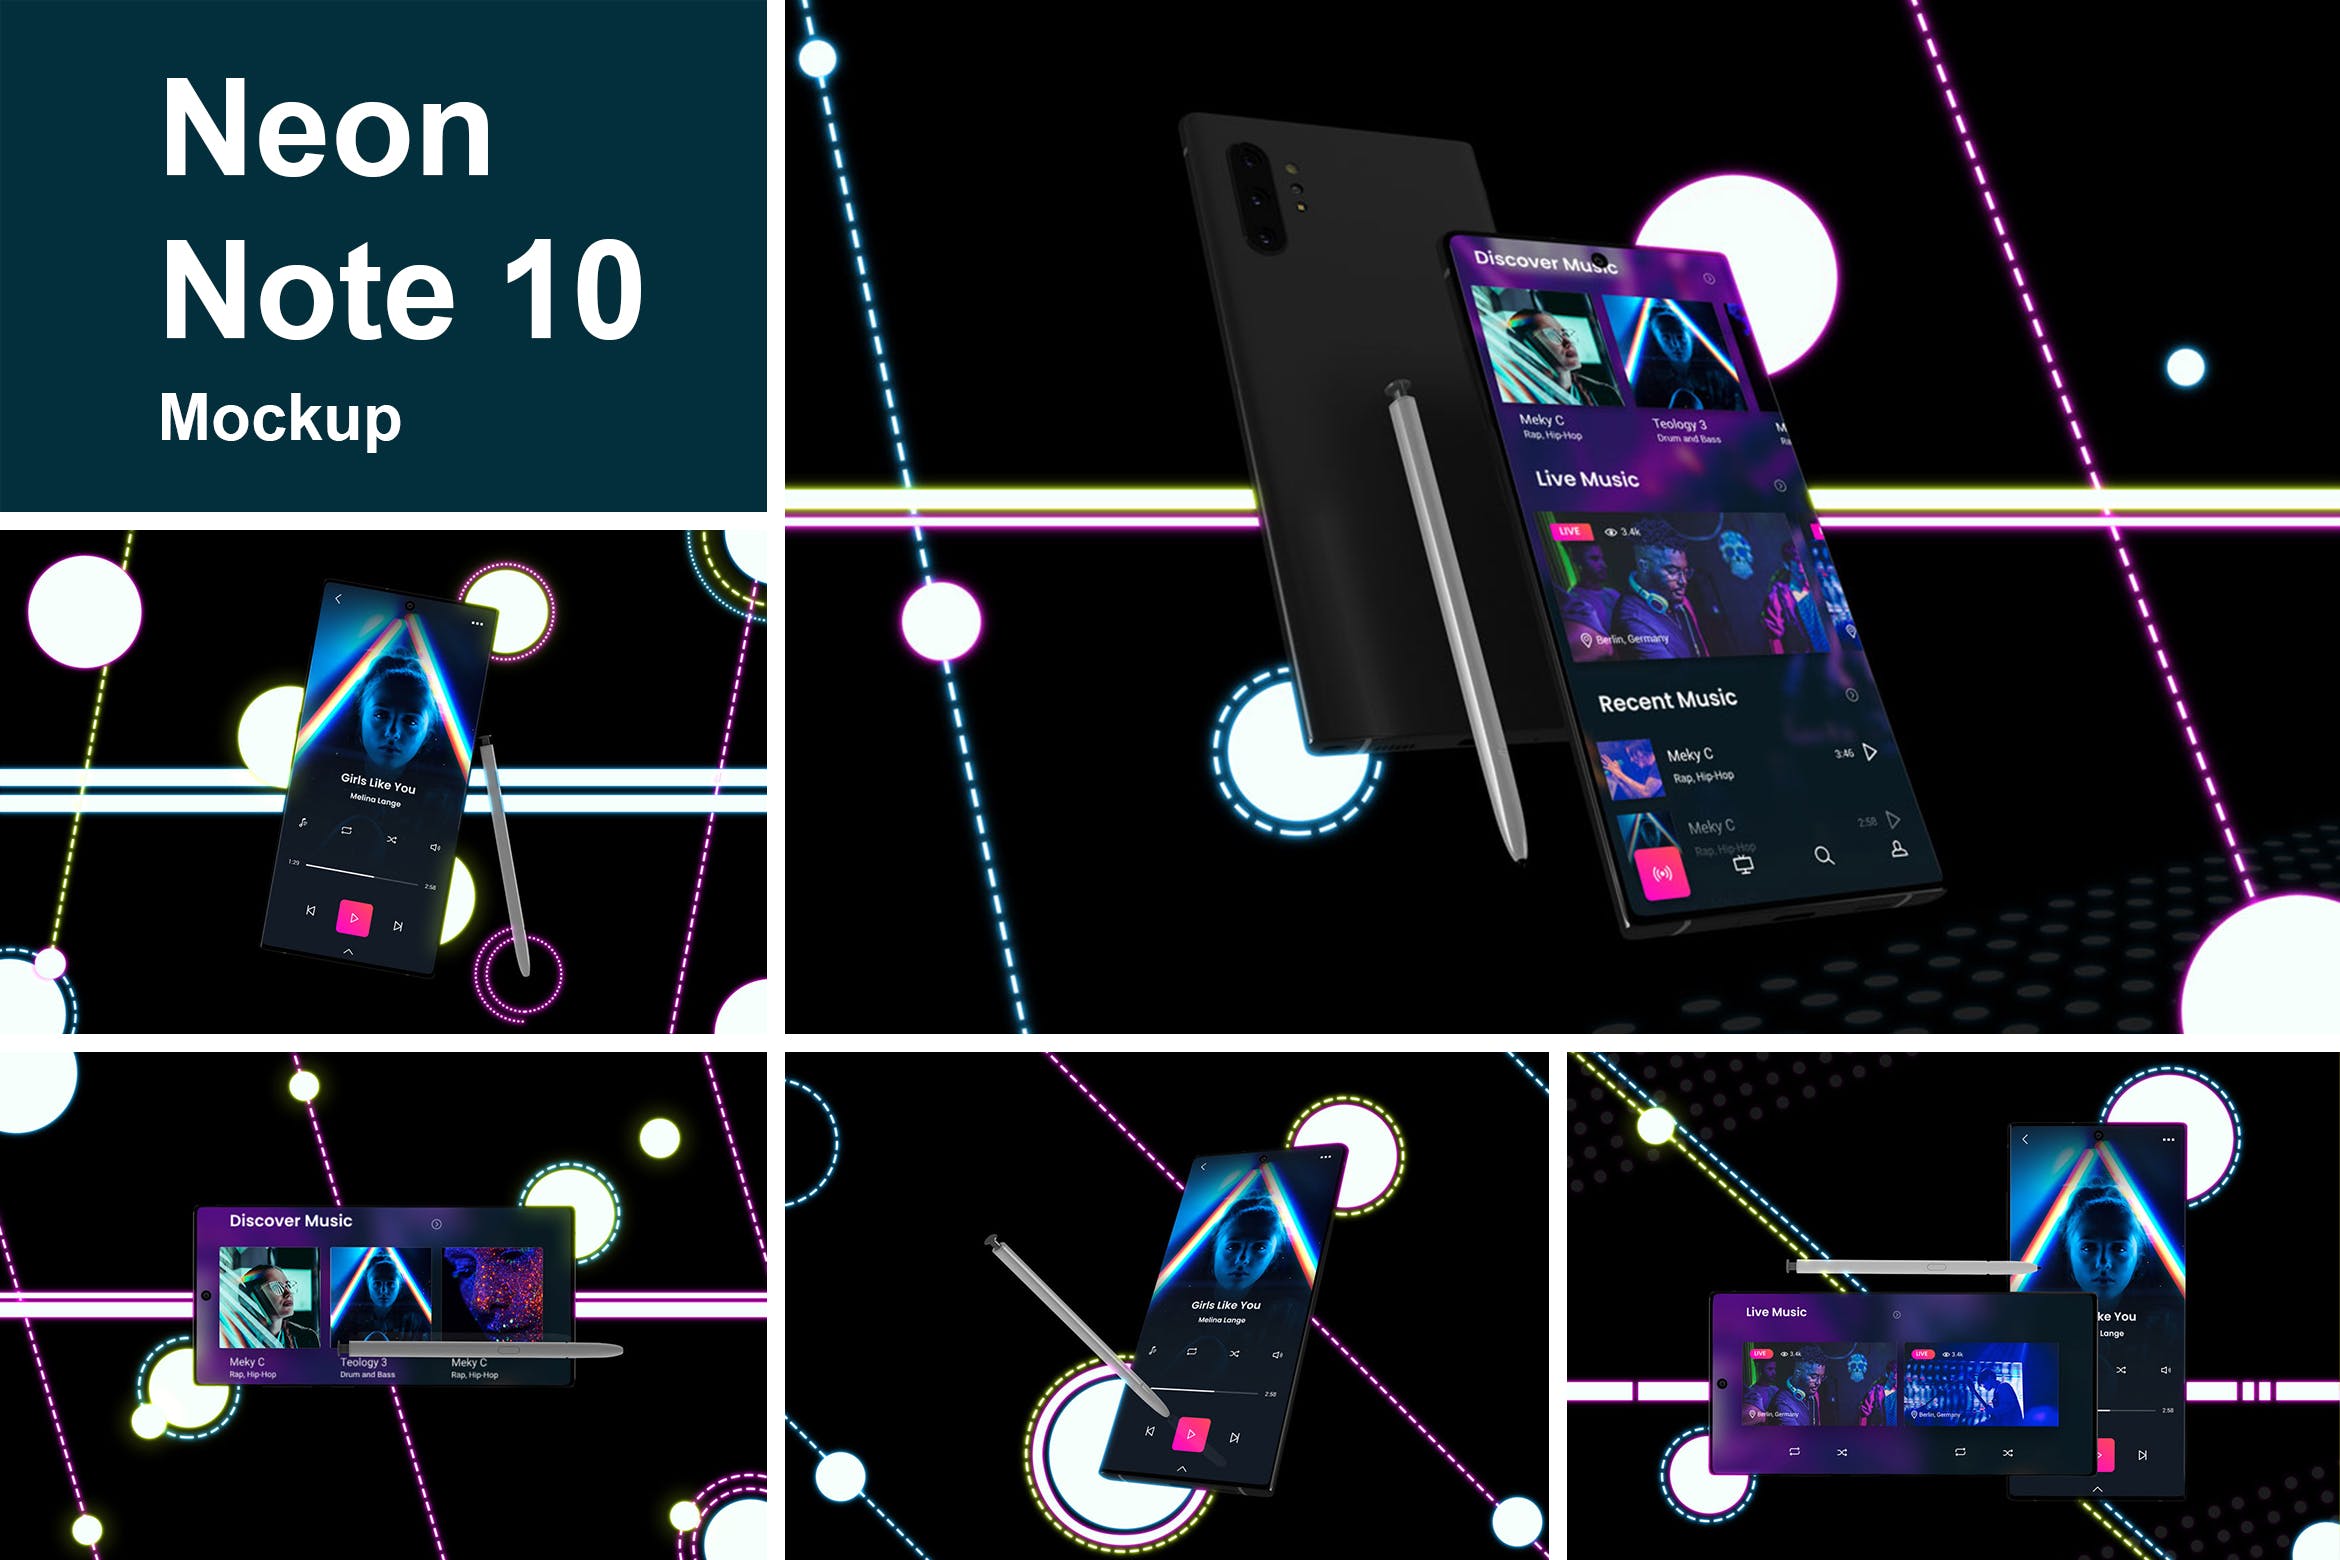 酷黑背景三星智能手机Note 10多角度屏幕预览样机模板 Neon Note 10 MockUp插图